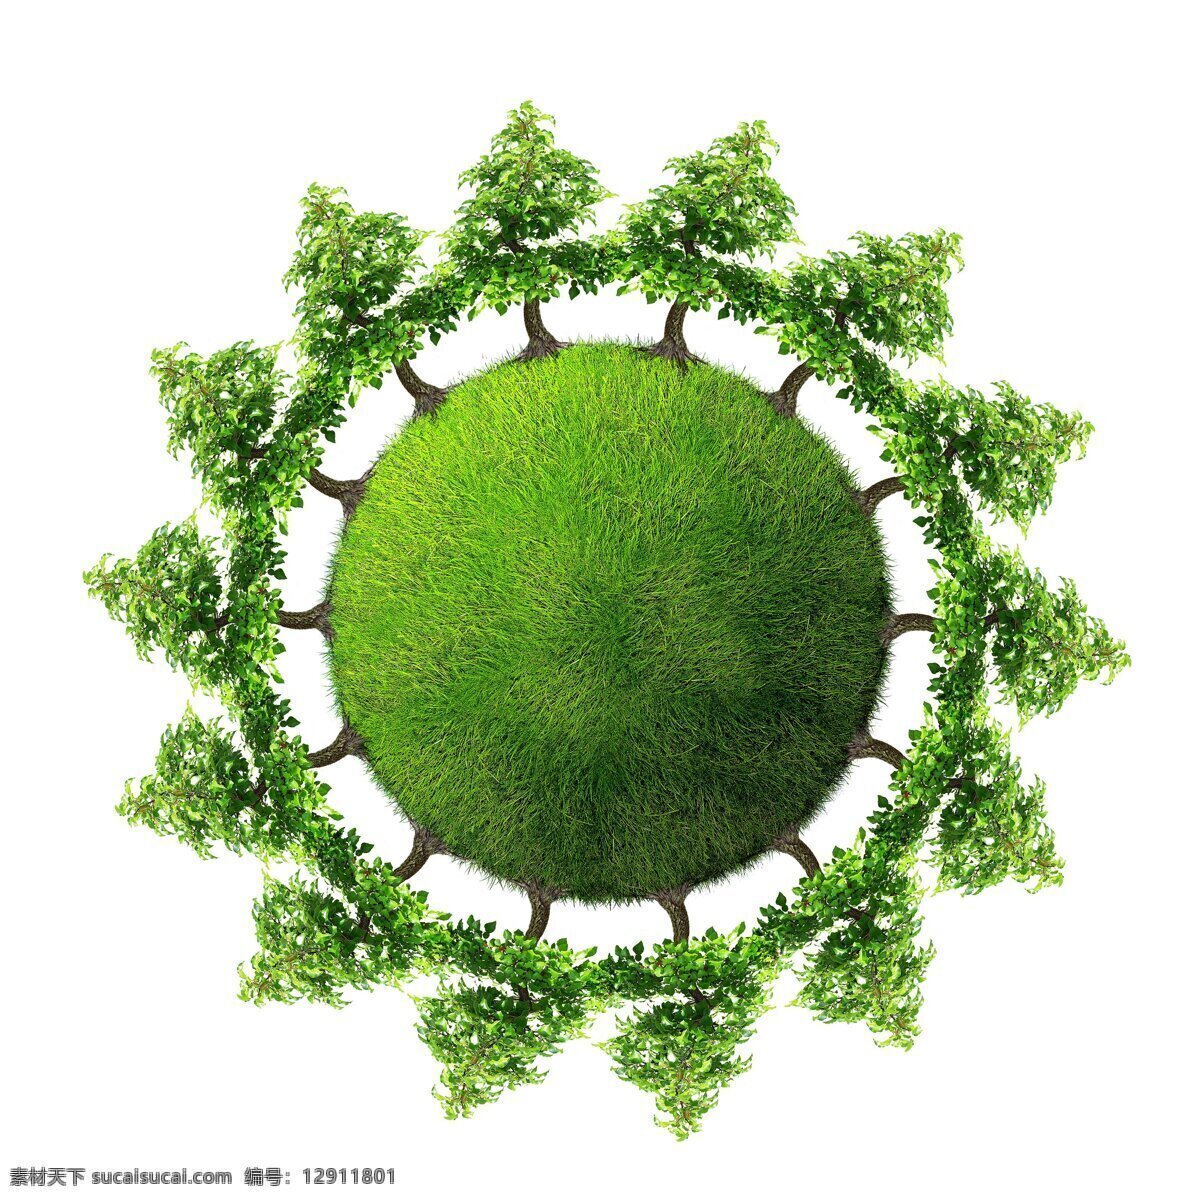 绿色地球小树 环保 自然 地球 小树围绕 树木树叶 生物世界